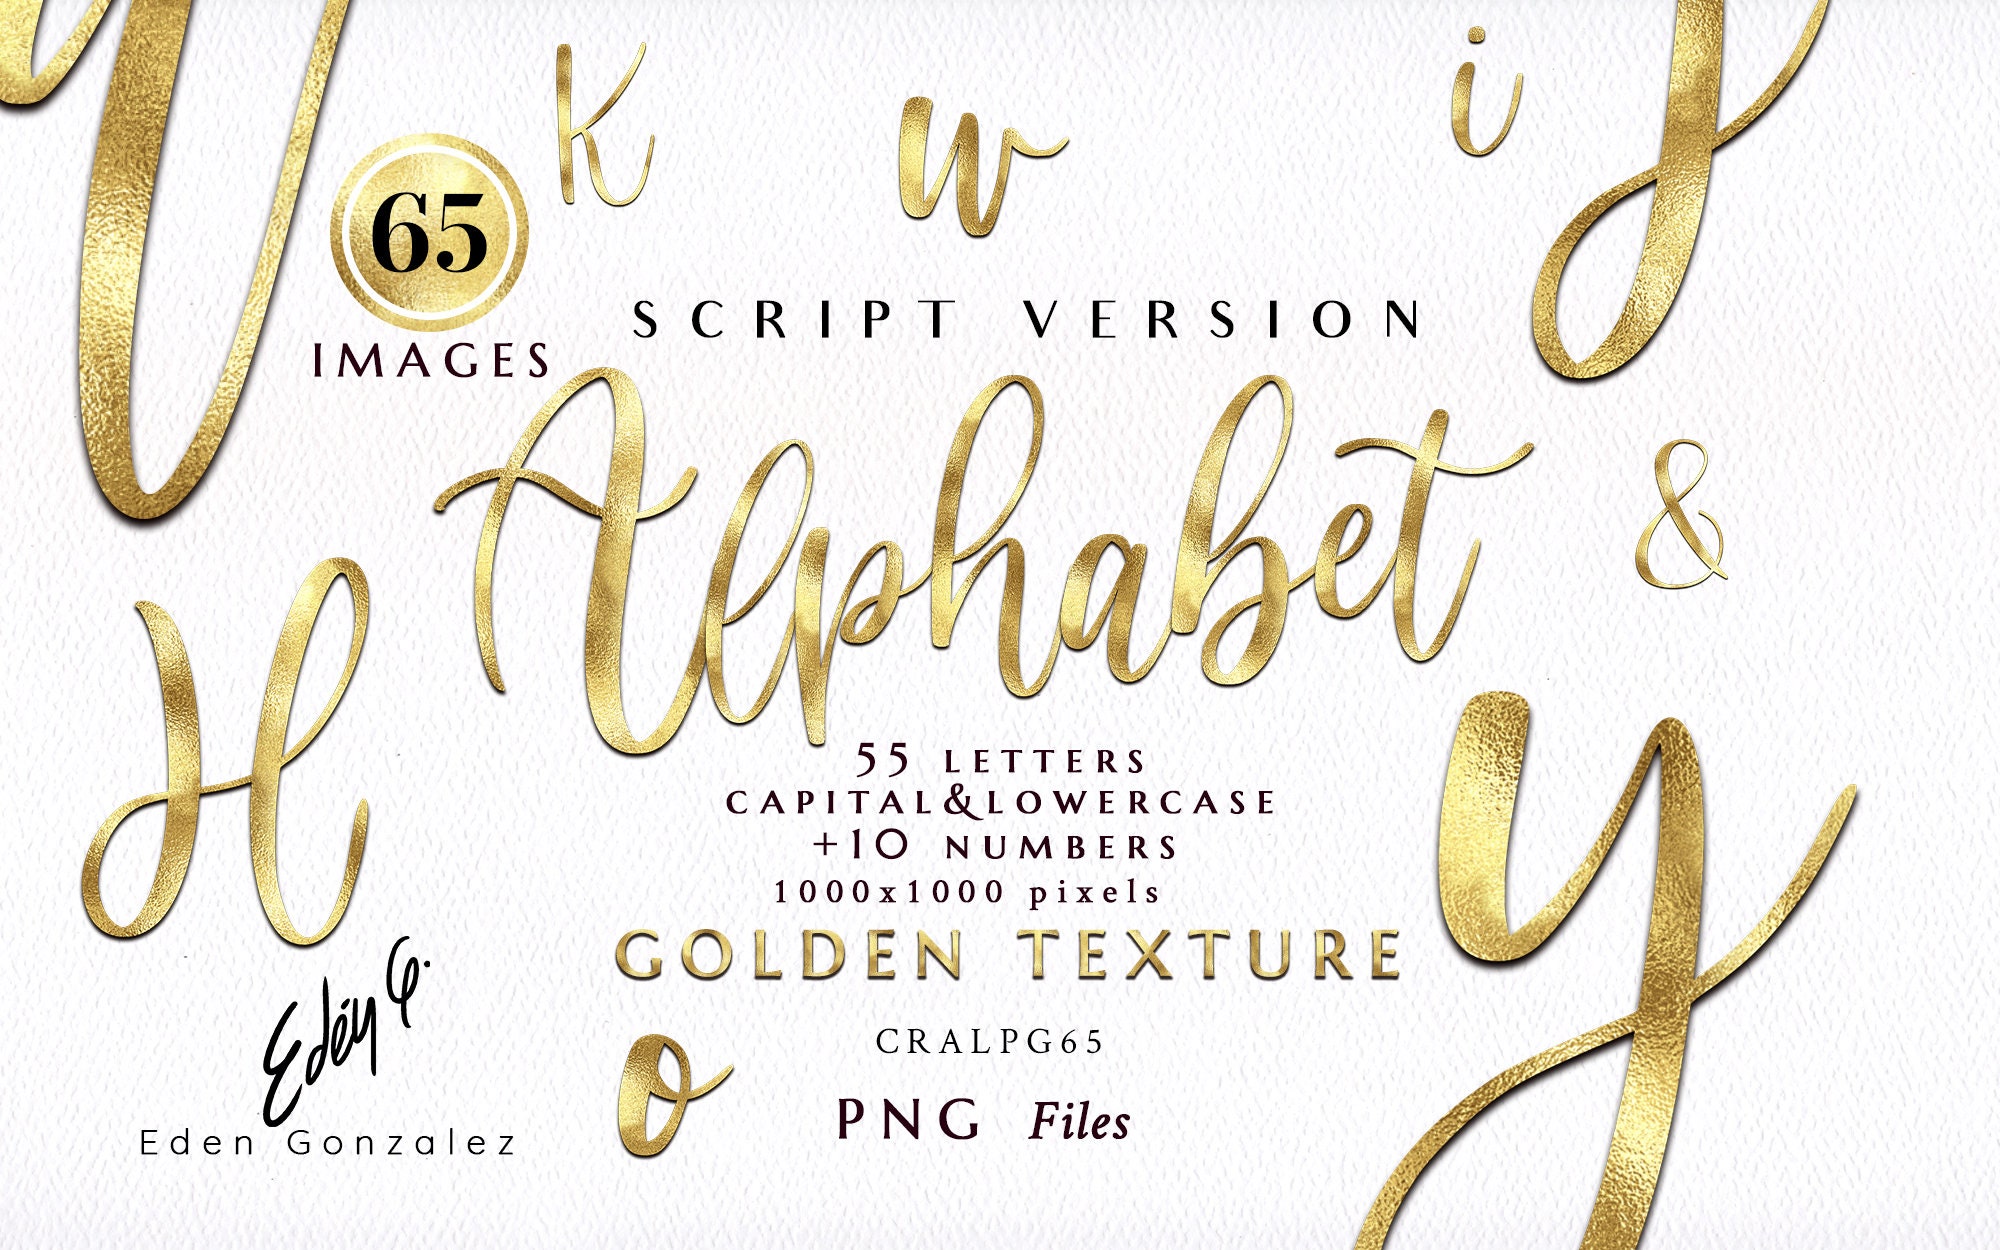 Digital Gold Font -  Sweden